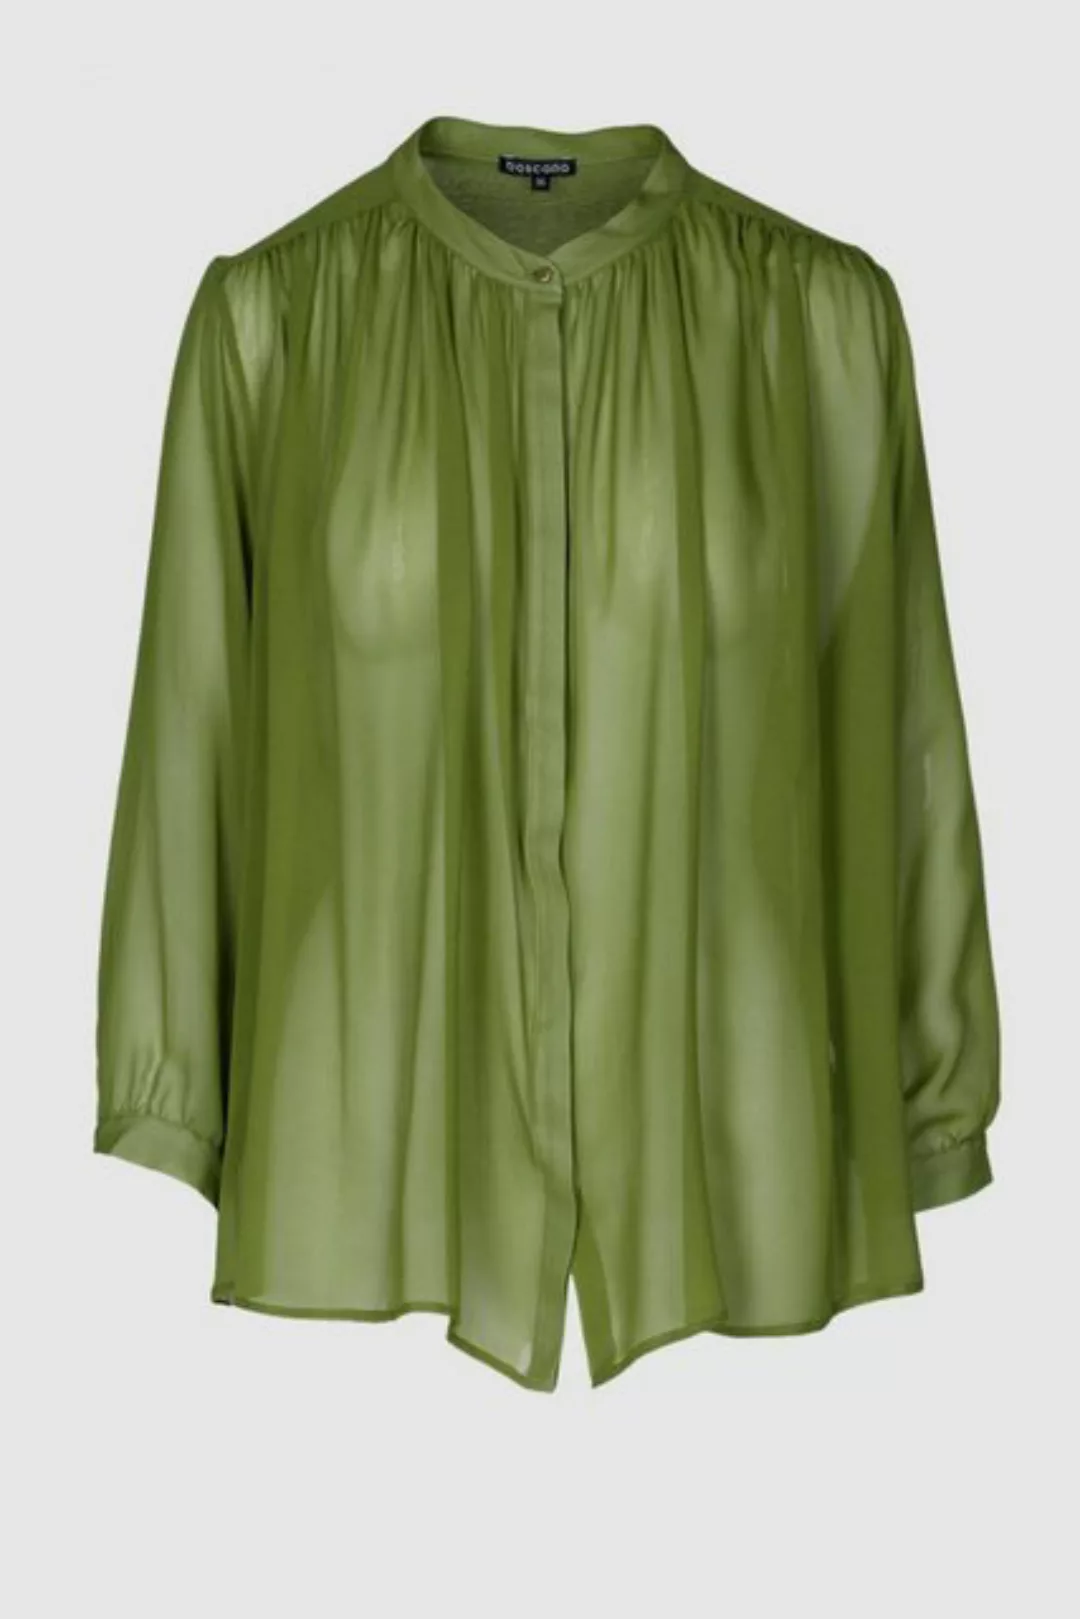 Boscana Seidenbluse Bluse aus reiner Seide in Grün 7/8 Arm günstig online kaufen